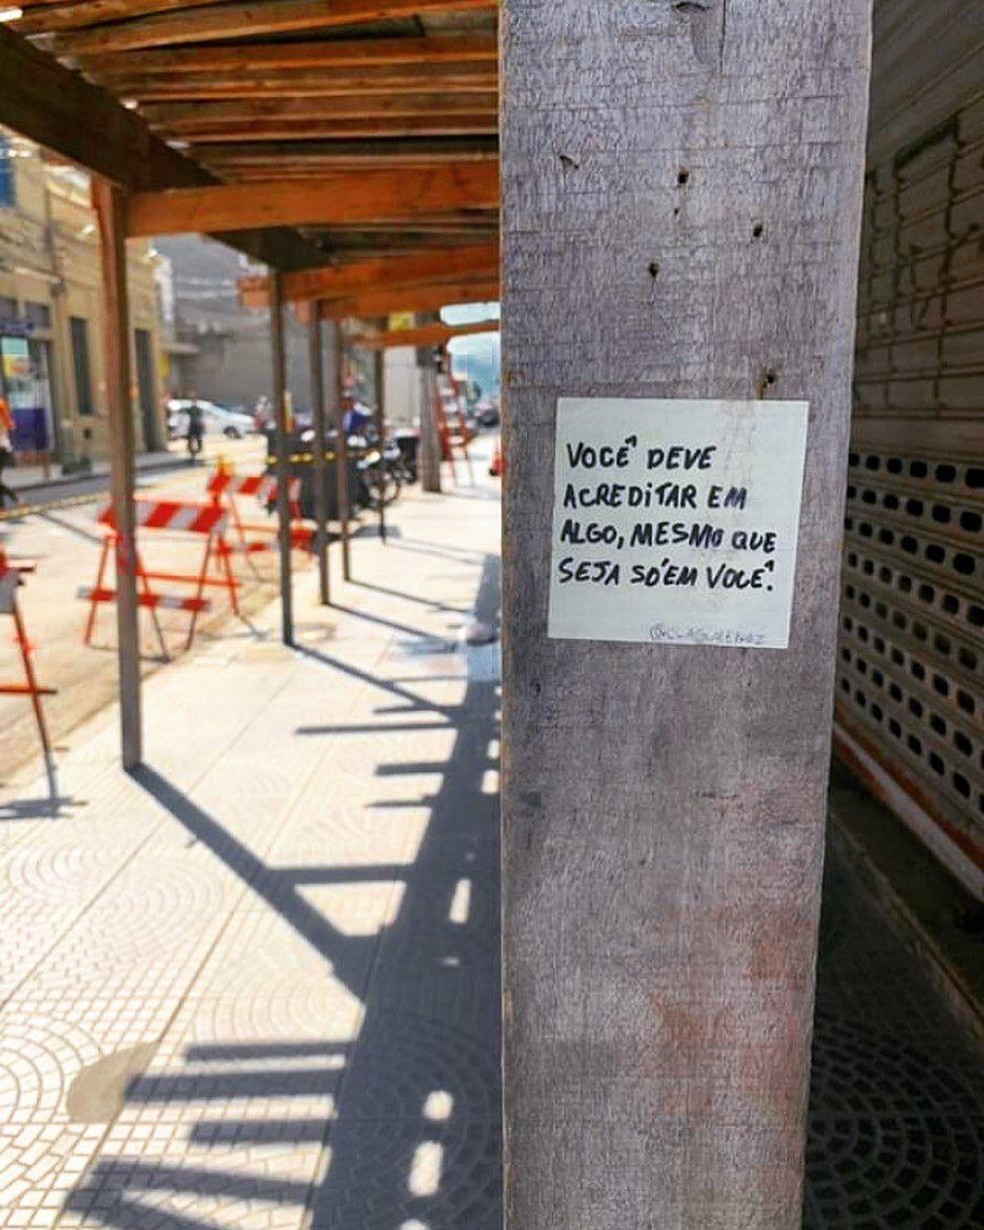 Bilhetes com mensagens positivas estão espalhados pelas ruas de Santos, SP — Foto: Arquivo Pessoal/Paola Gimenez